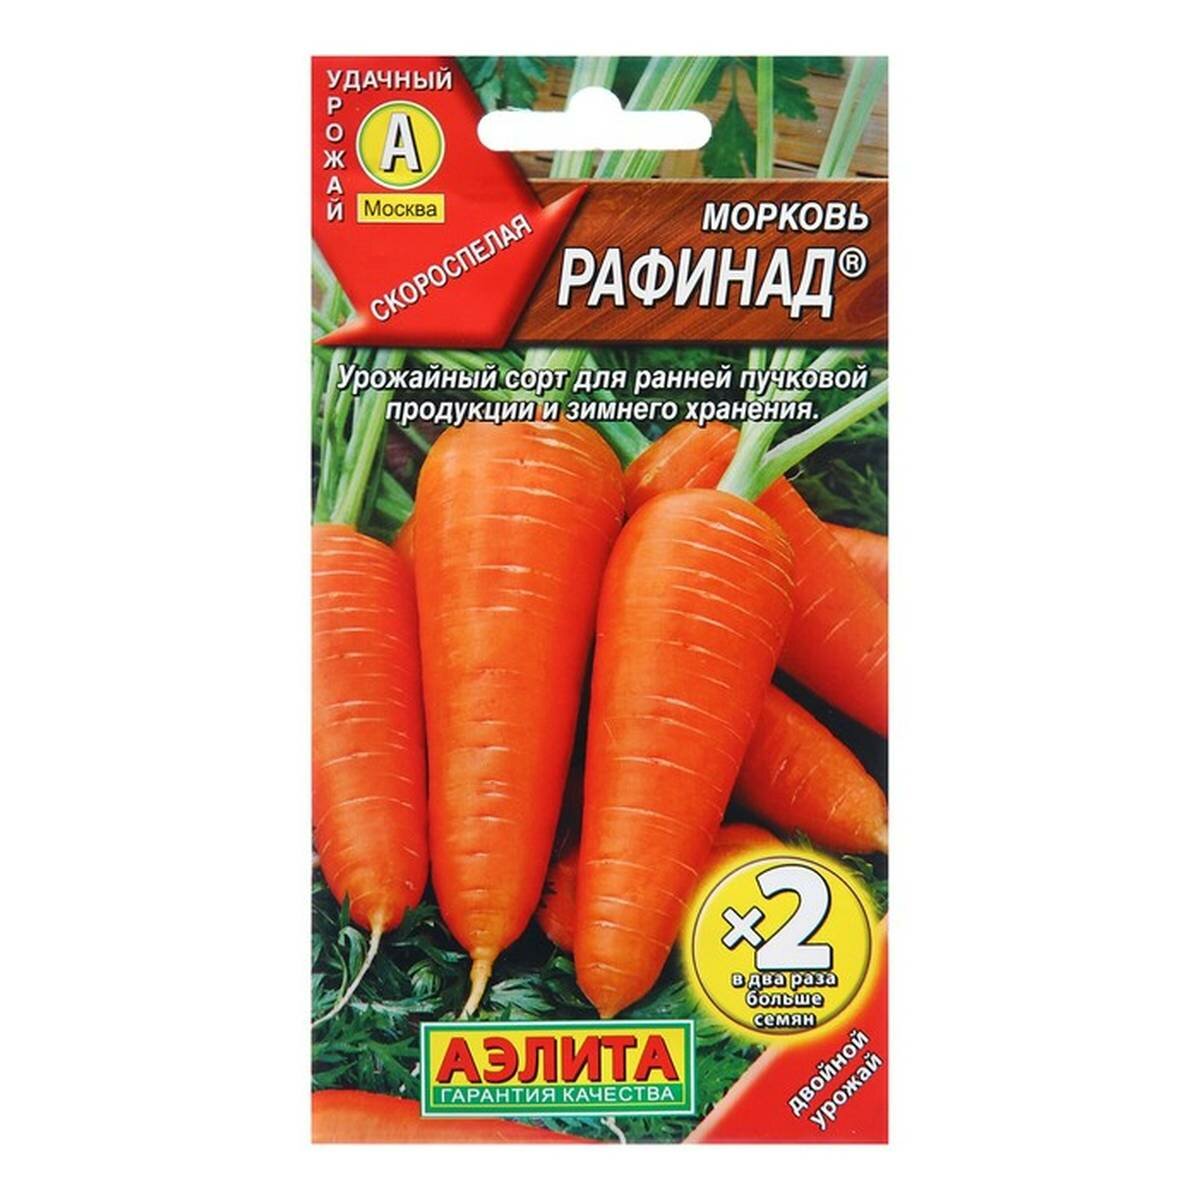 Семена Морковь Рафинад ® Ц/П х2 4г 2 упак.